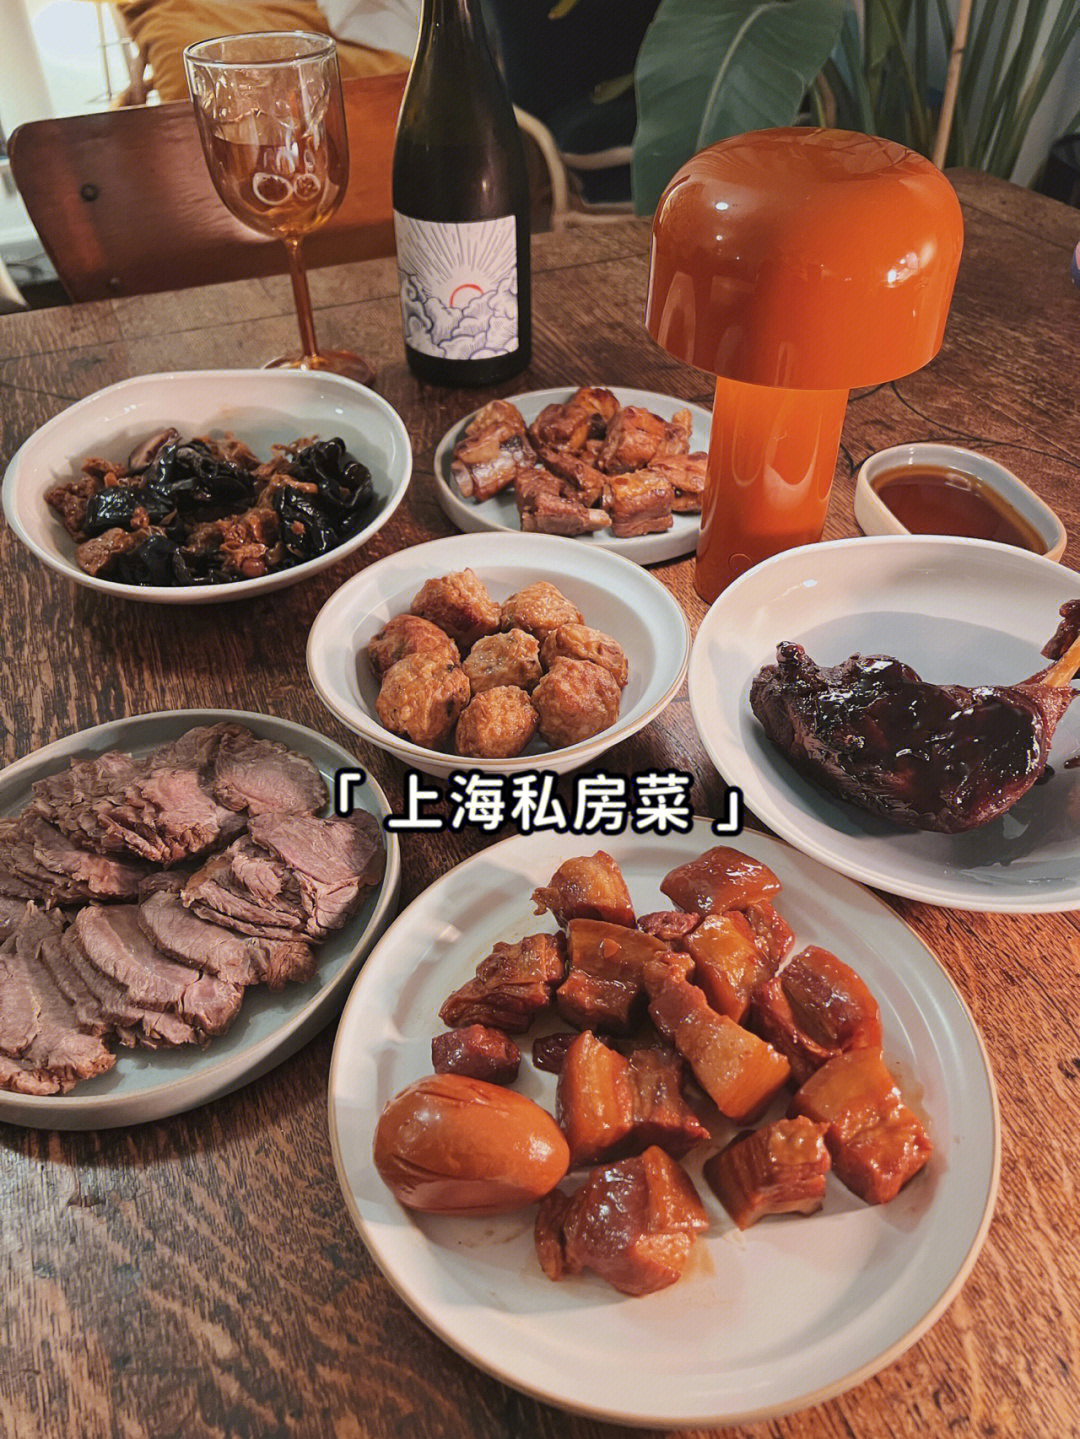 上海萍姐私房菜图片